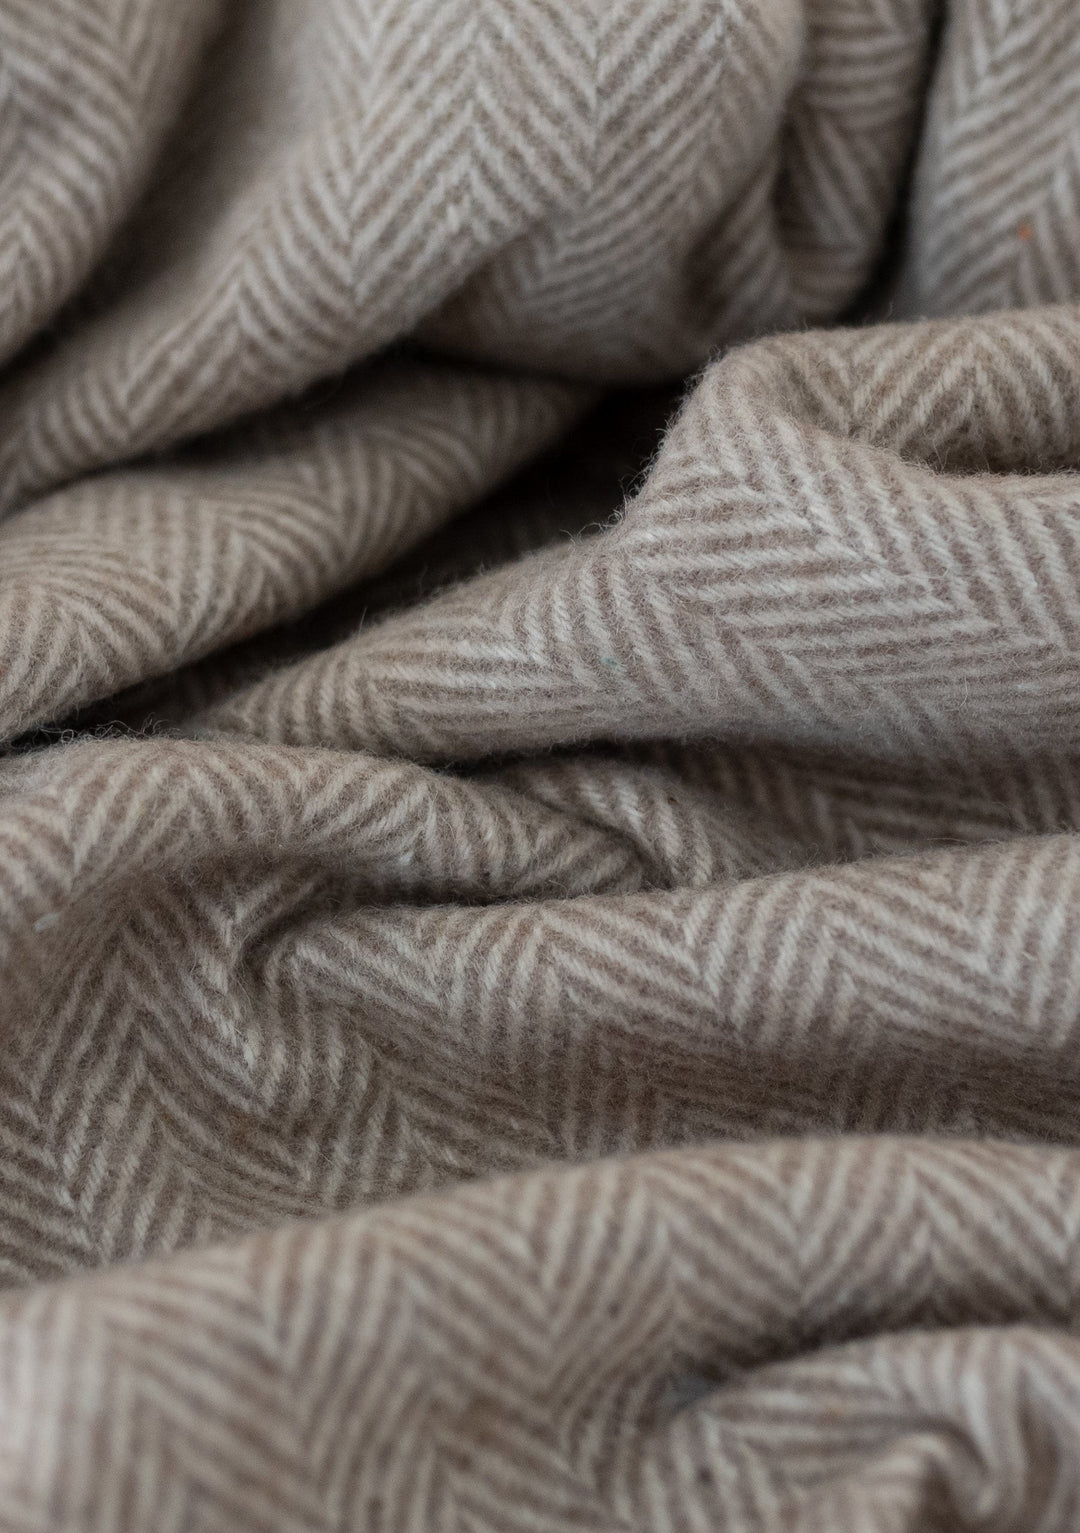 Recycled Wool Picnic Blanket in Natural Herringbone